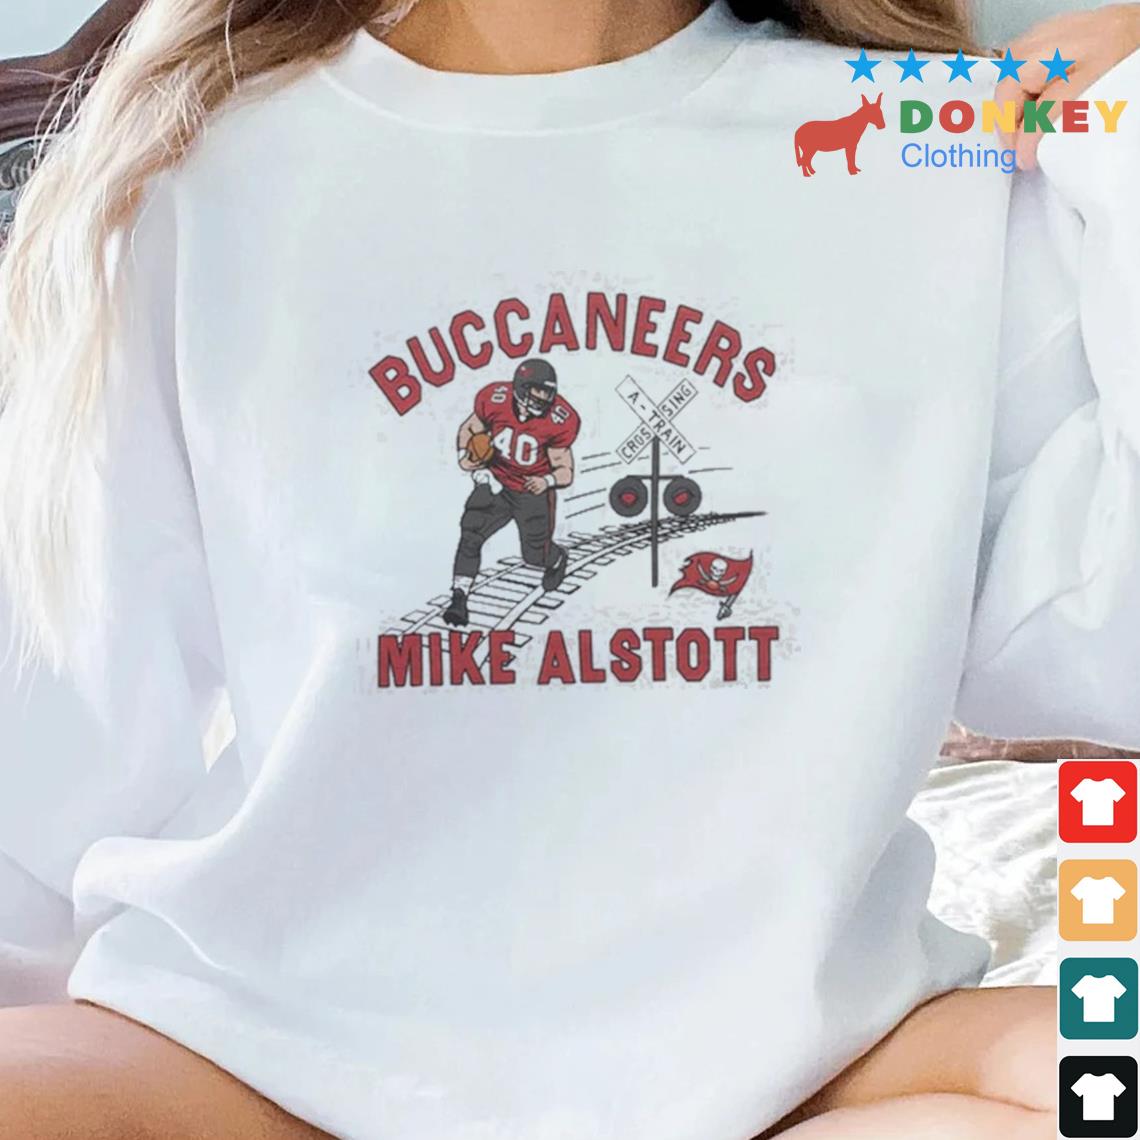 Tampa Bay Buccaneers Mike Alstott Shirt